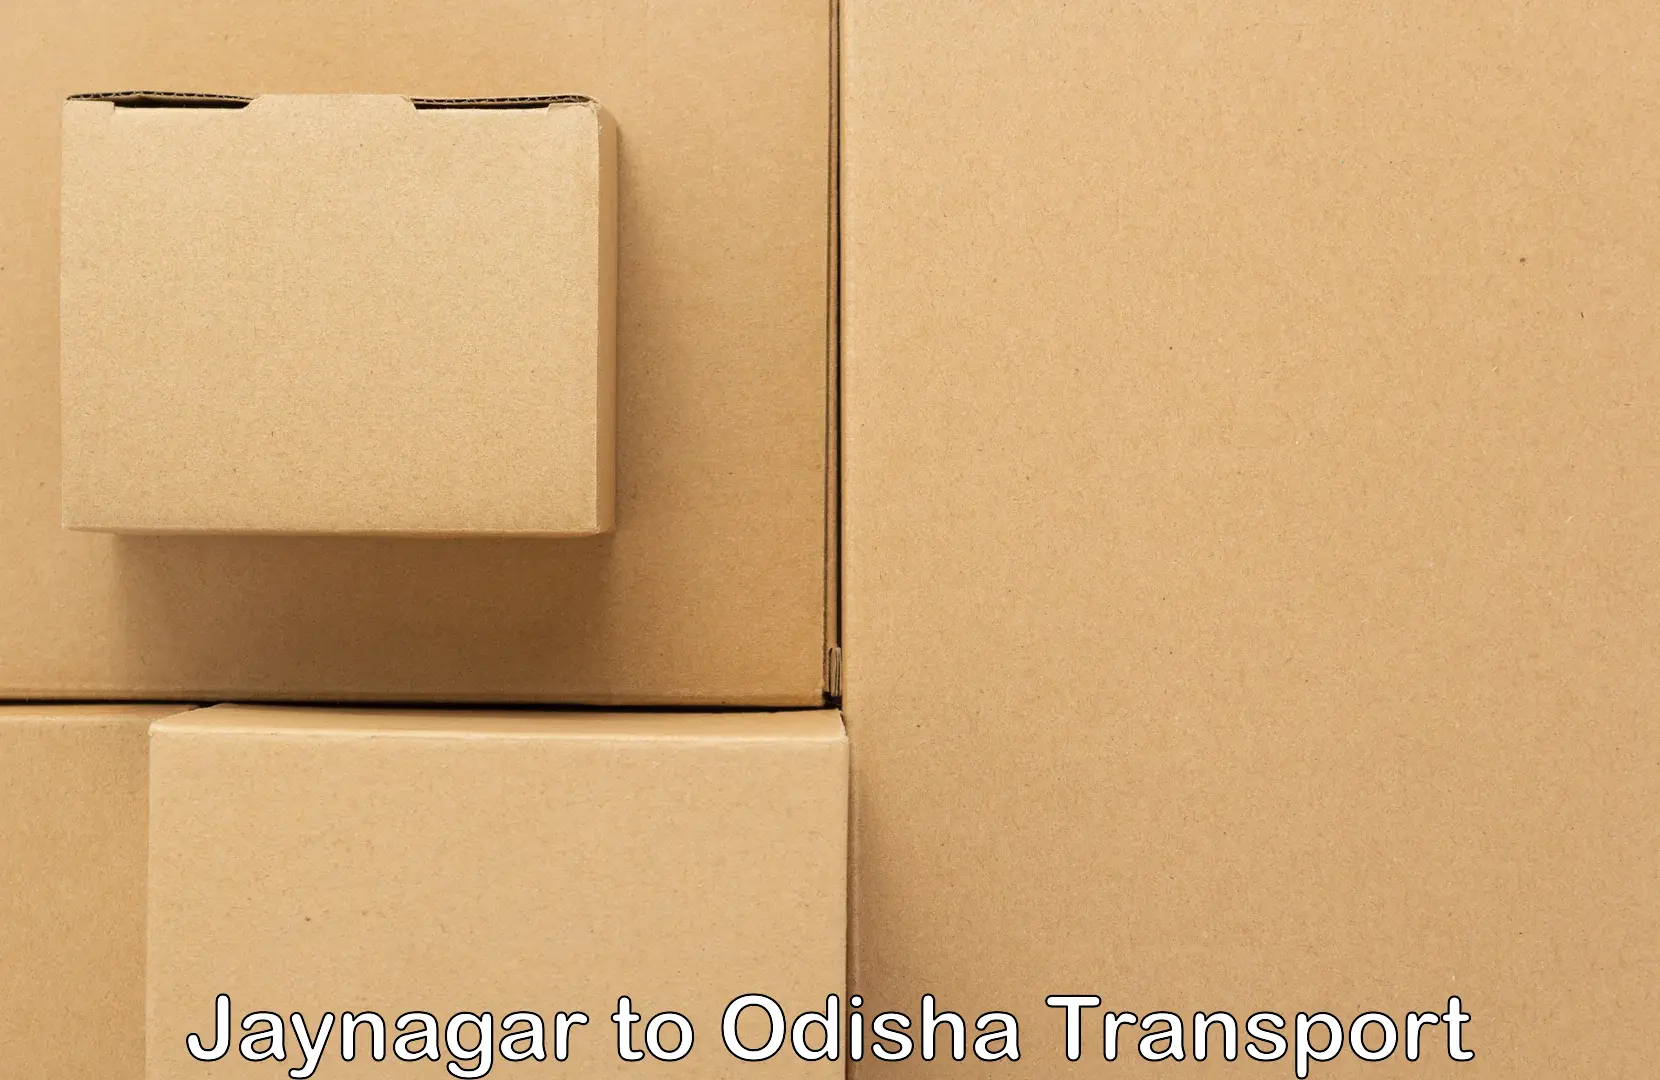 Daily transport service Jaynagar to Koraput